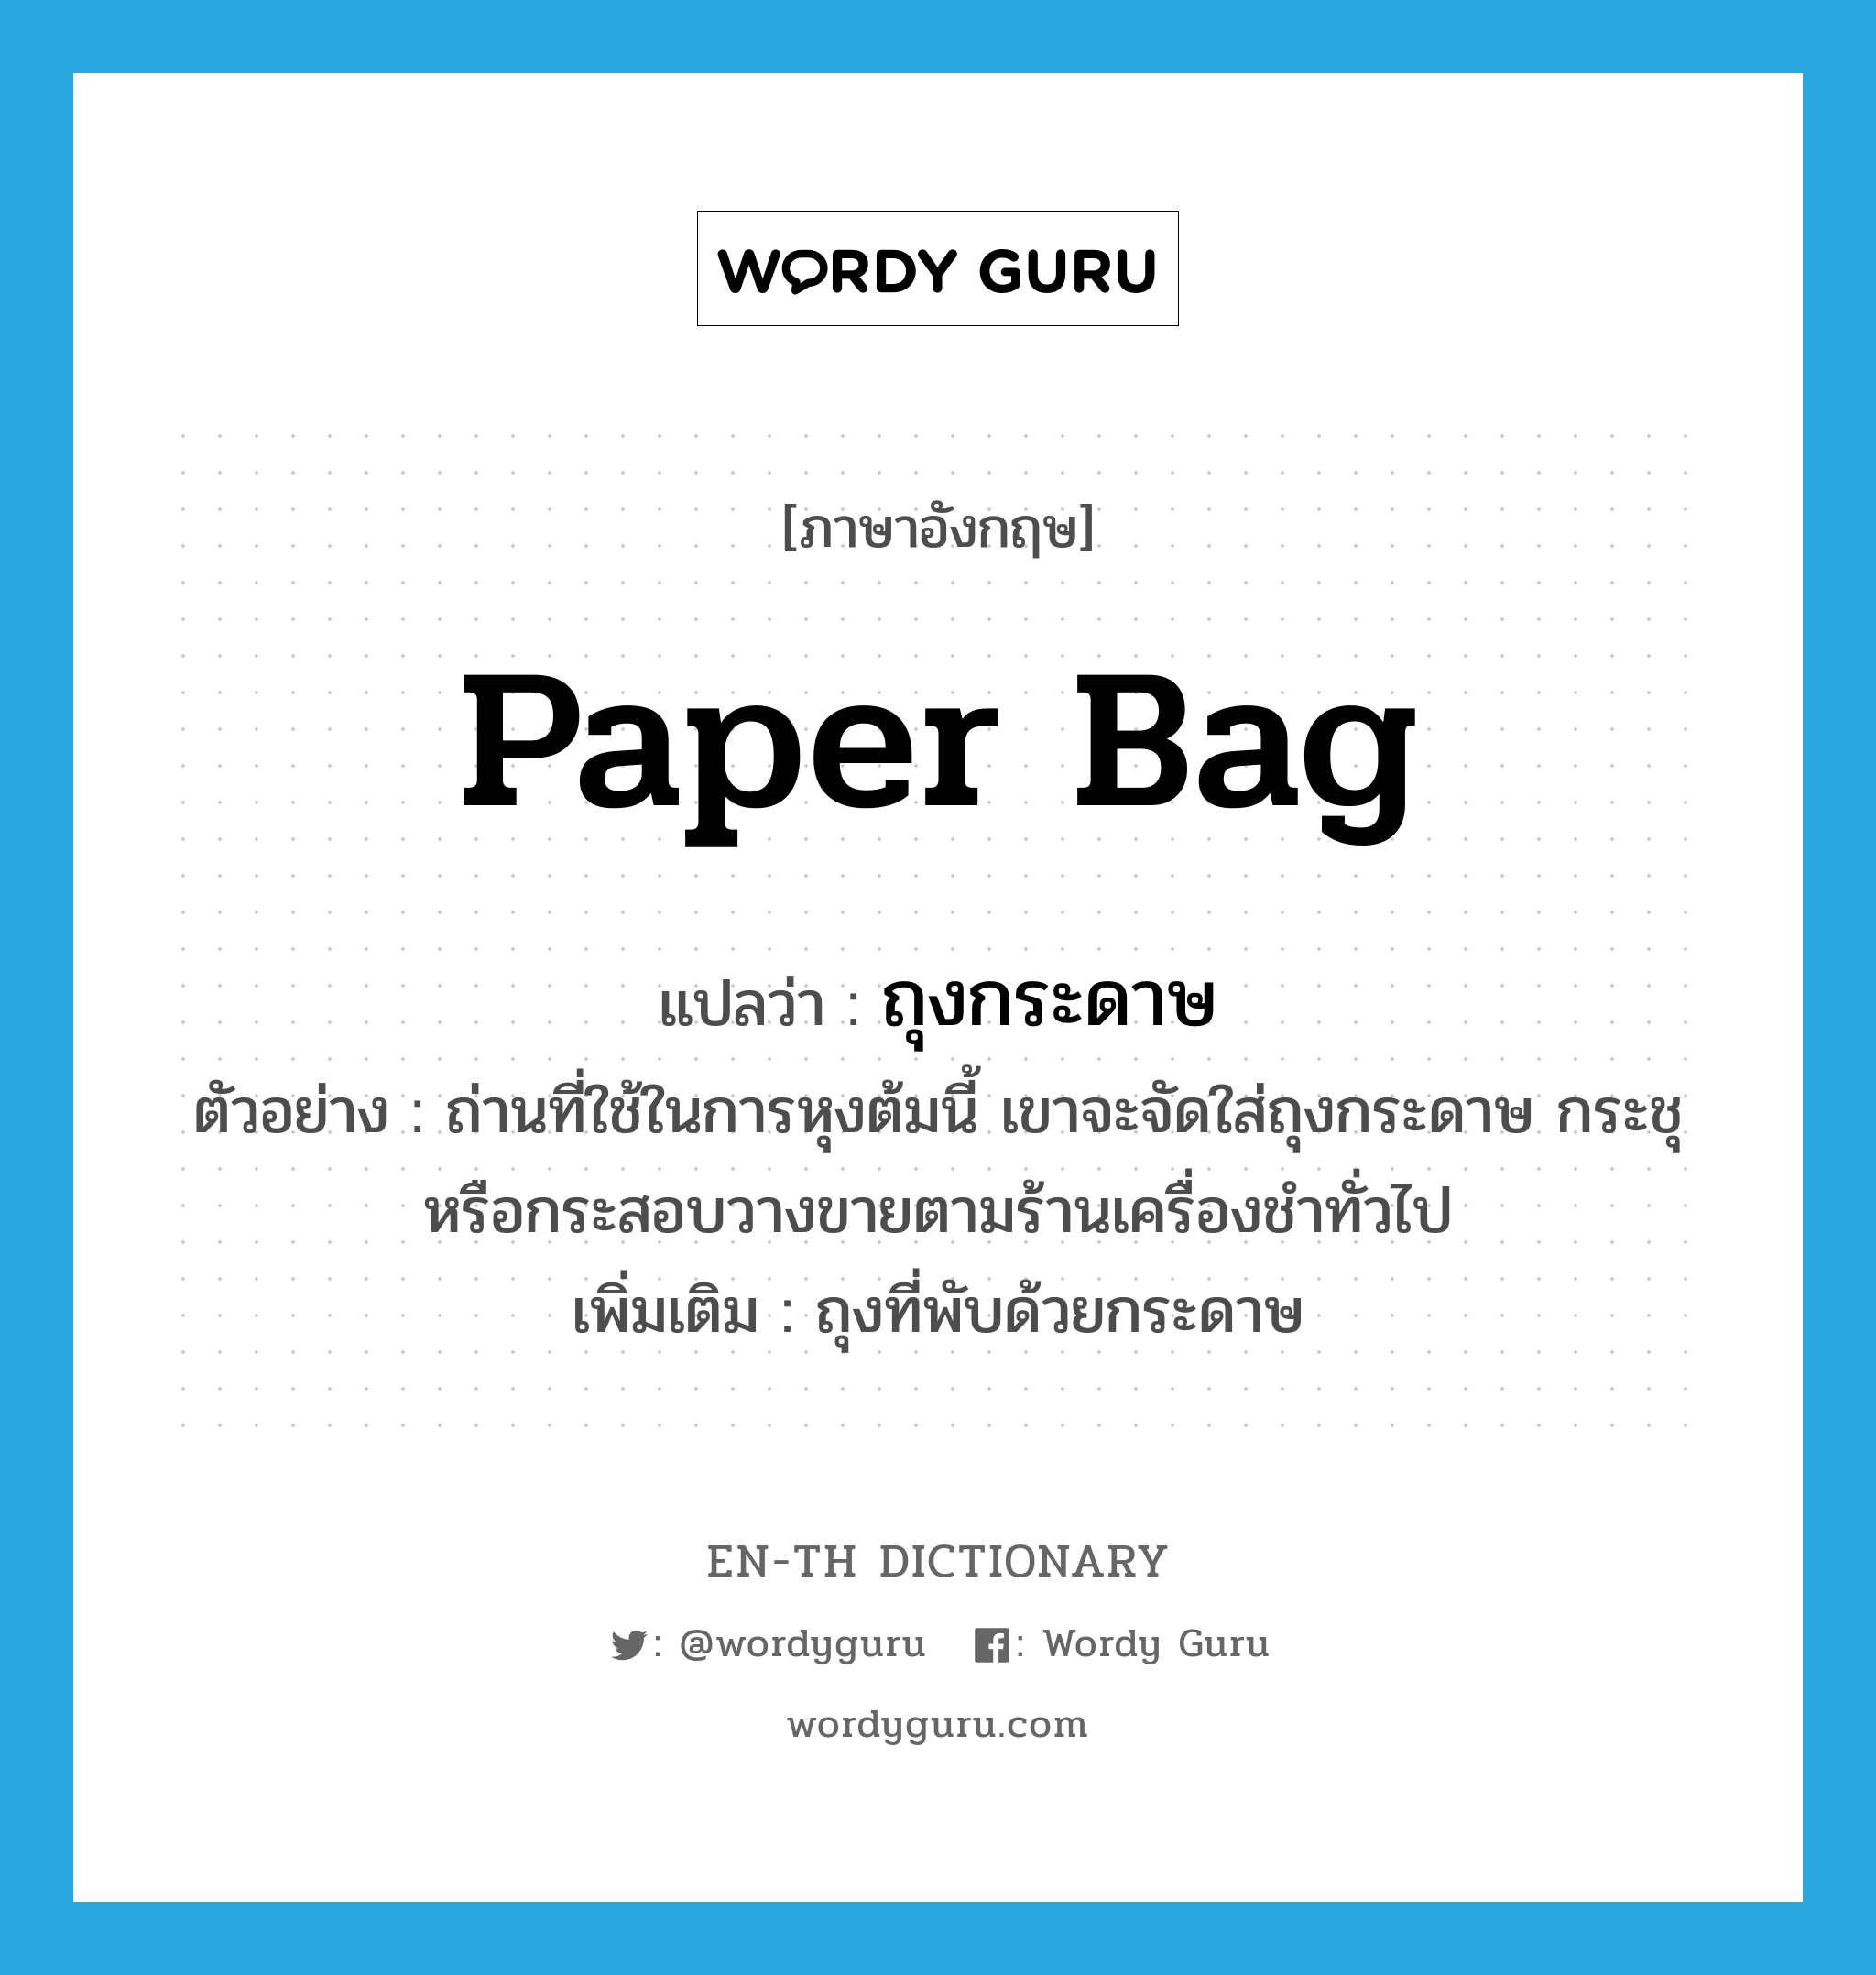 ถุงกระดาษ ภาษาอังกฤษ?, คำศัพท์ภาษาอังกฤษ ถุงกระดาษ แปลว่า paper bag ประเภท N ตัวอย่าง ถ่านที่ใช้ในการหุงต้มนี้ เขาจะจัดใส่ถุงกระดาษ กระชุ หรือกระสอบวางขายตามร้านเครื่องชำทั่วไป เพิ่มเติม ถุงที่พับด้วยกระดาษ หมวด N